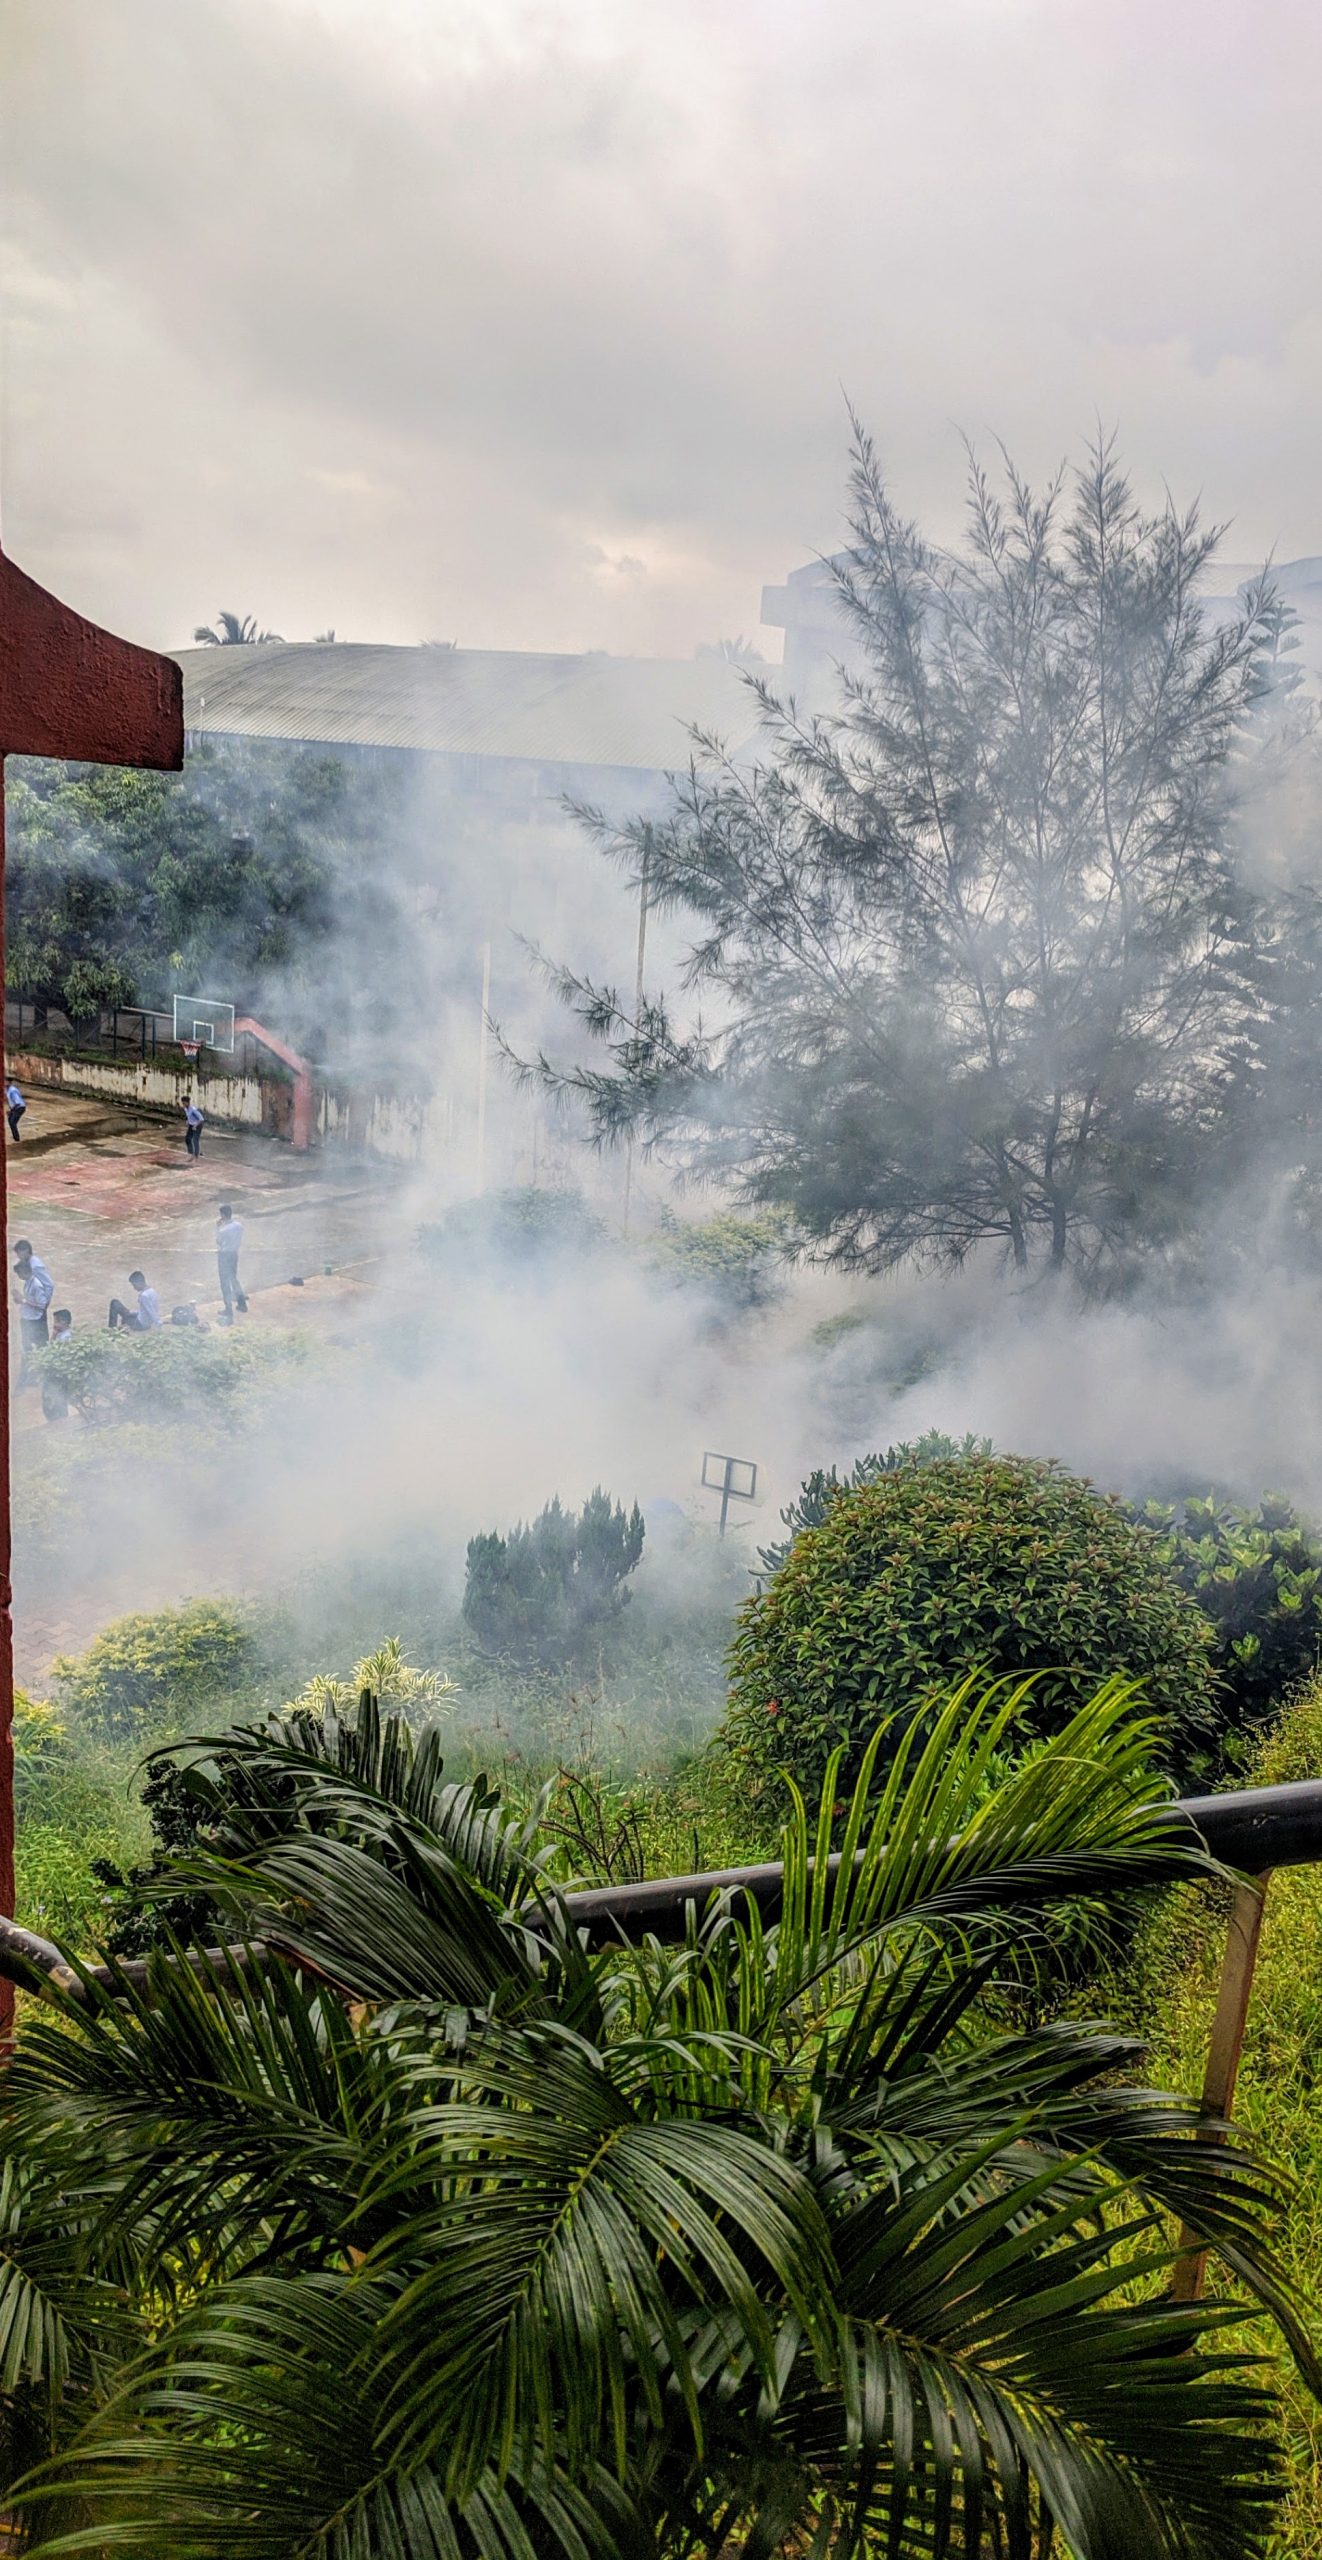 Smoke rising from land